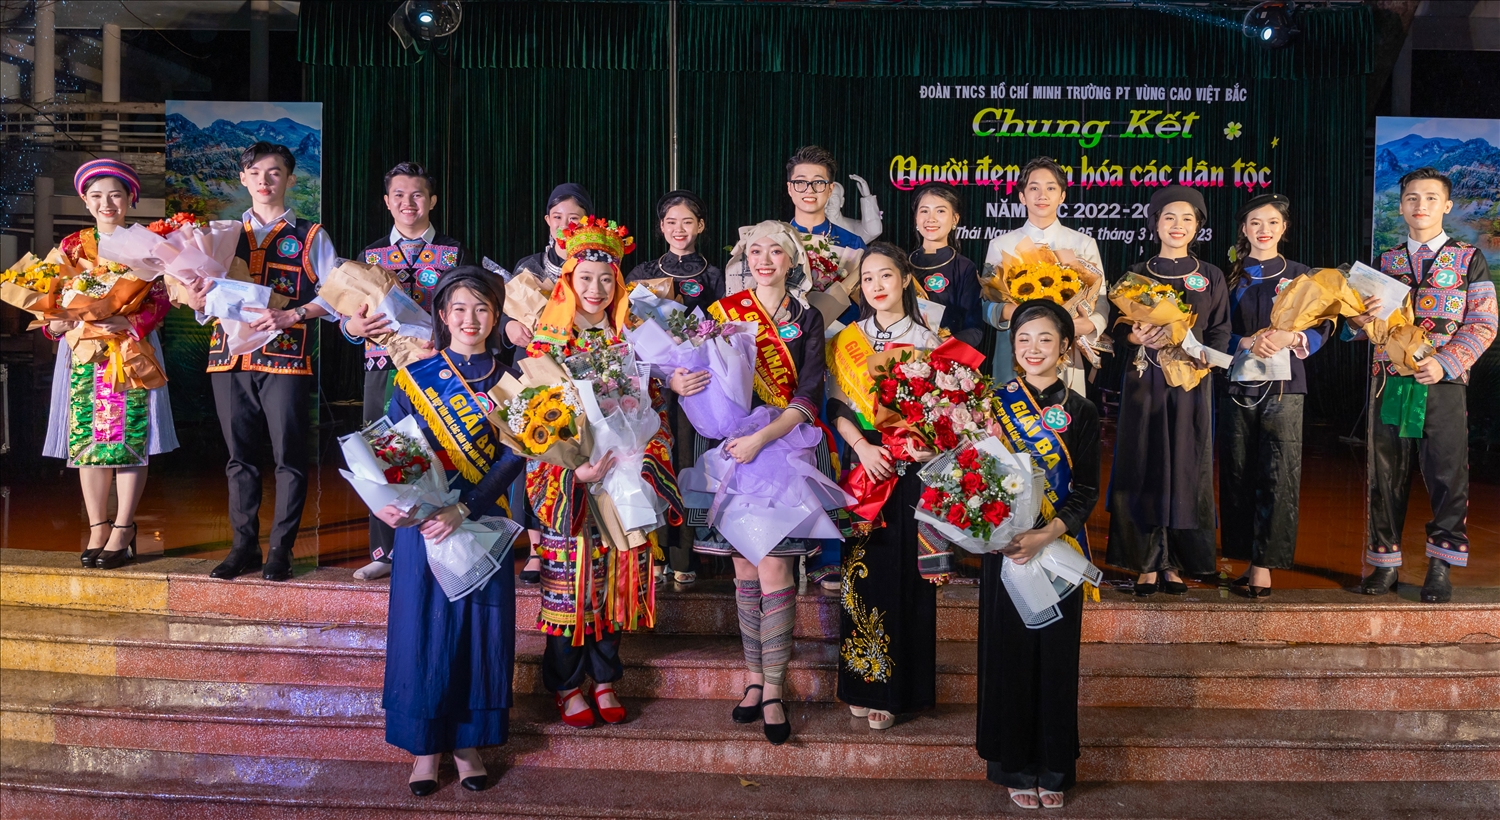 16 thí sinh xuất sắc nhất tham dự Chung kết Cuộc thi “Người đẹp văn hóa các dân tộc” năm học 2022-2023